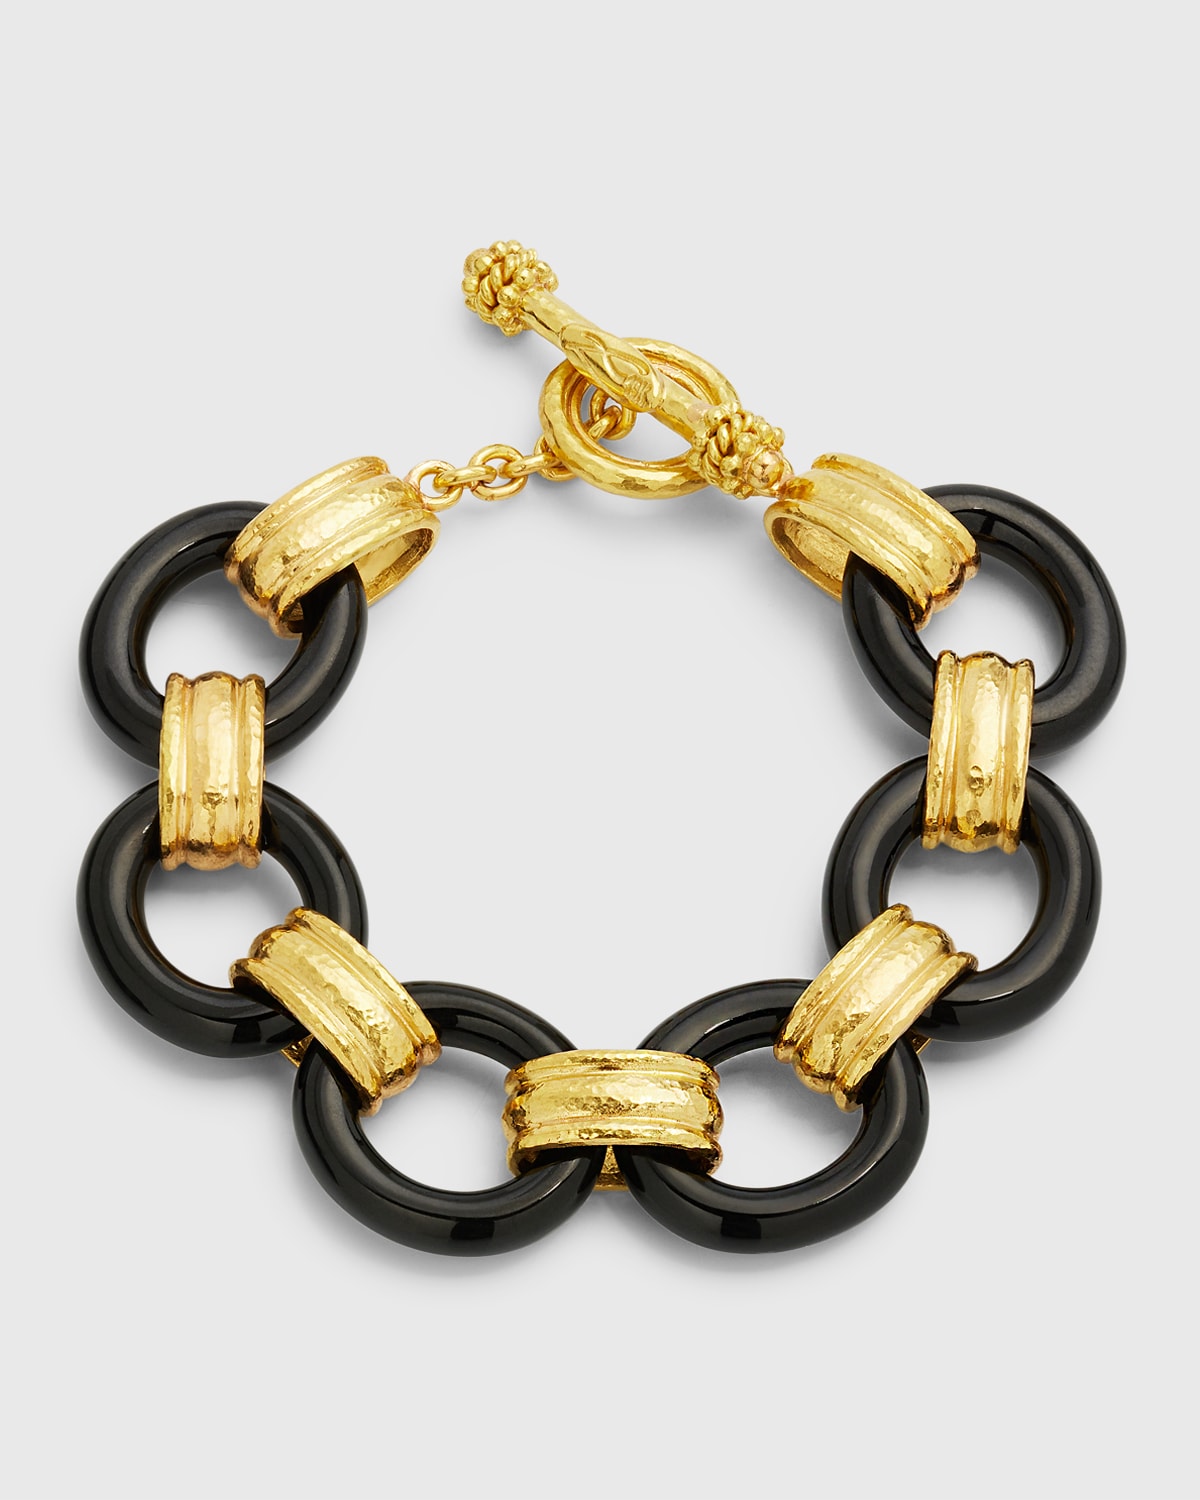 19K Large Black Jade and Gold Connector Bracelet